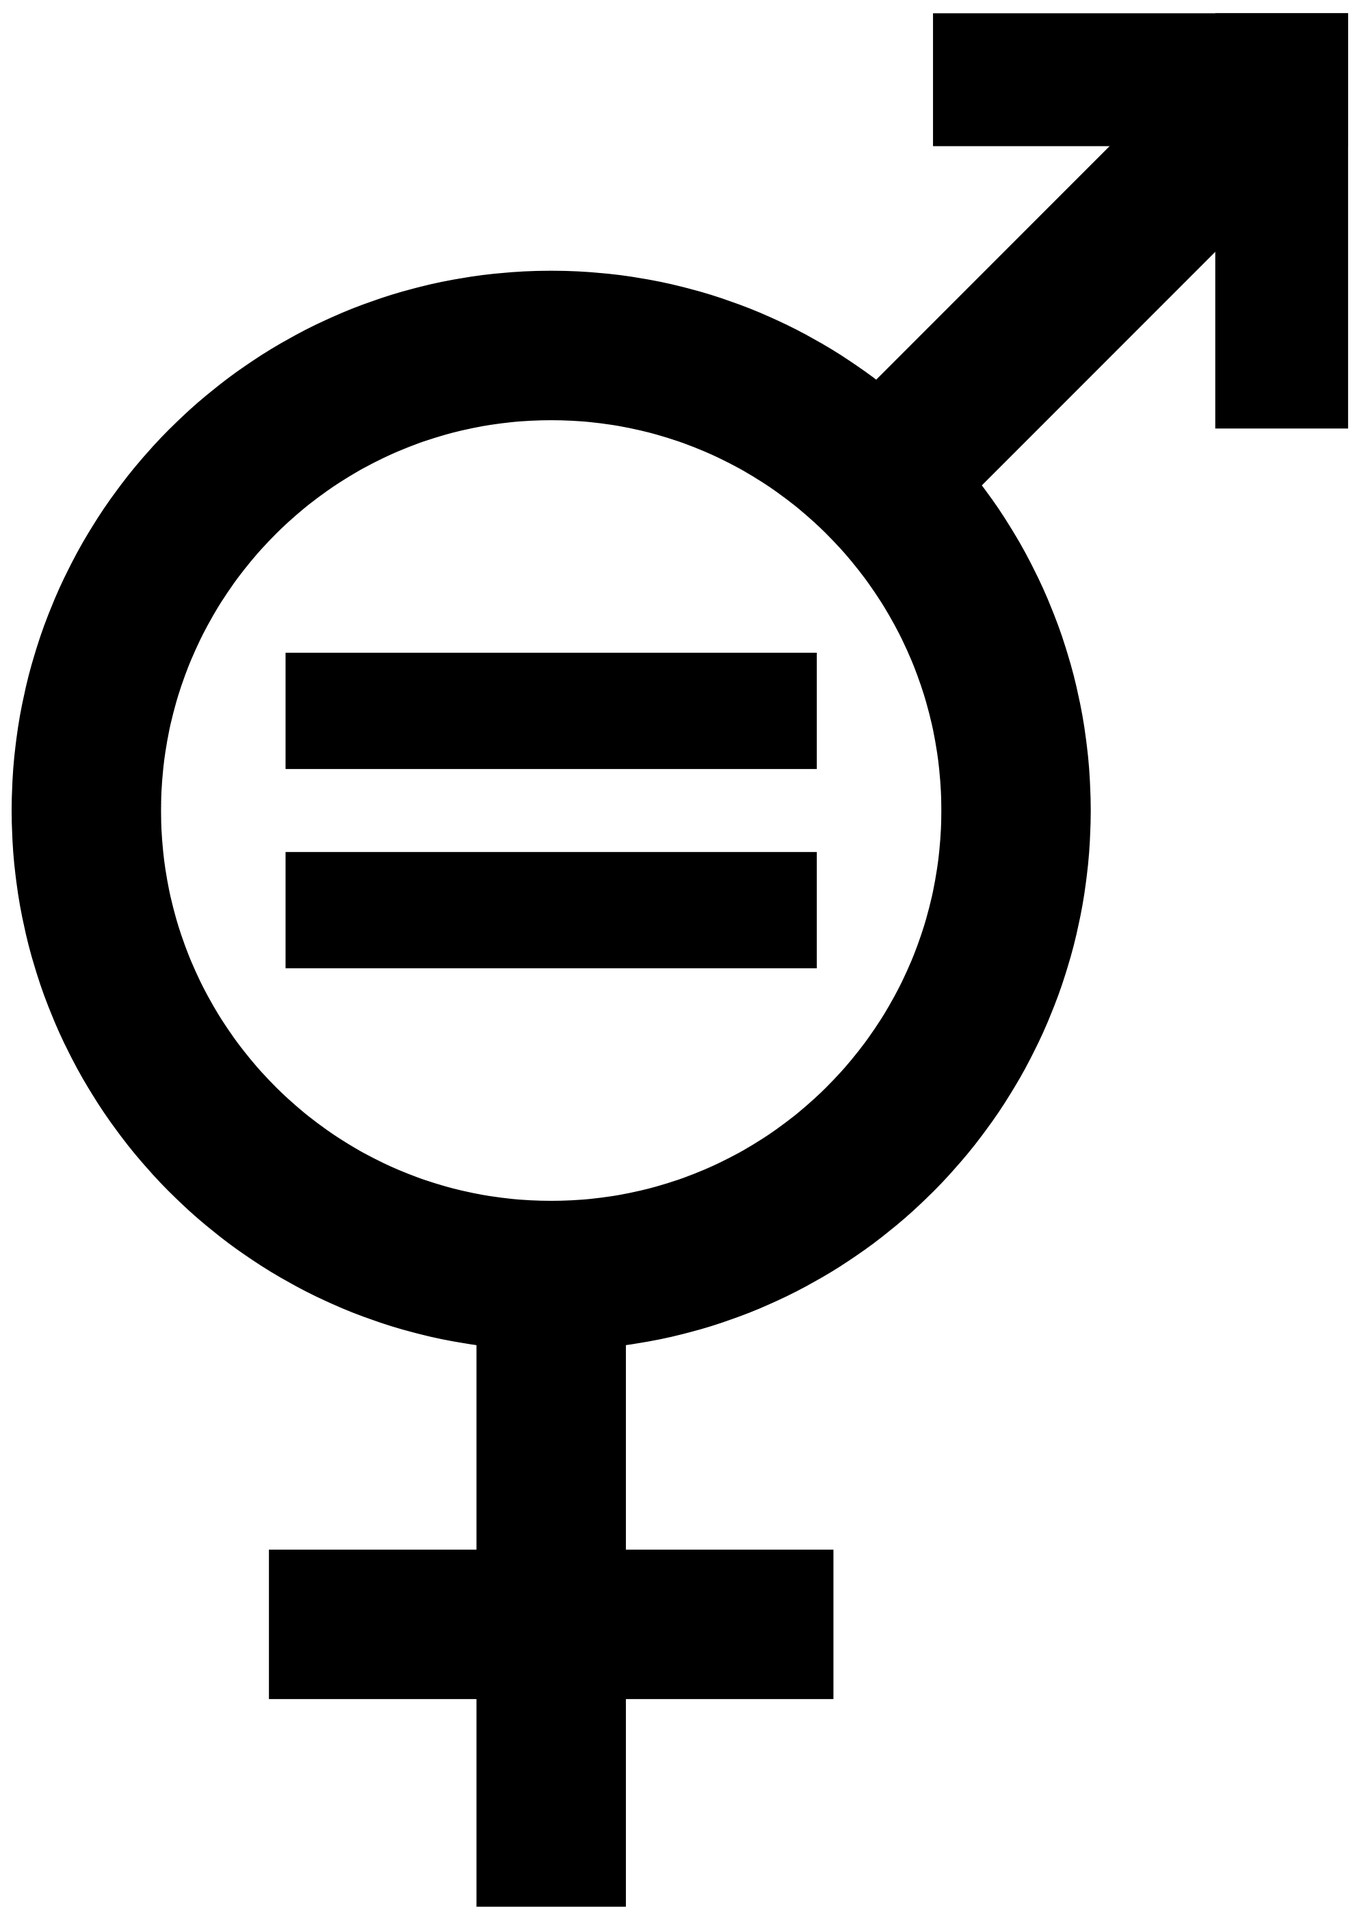 Index Egalite homme femme